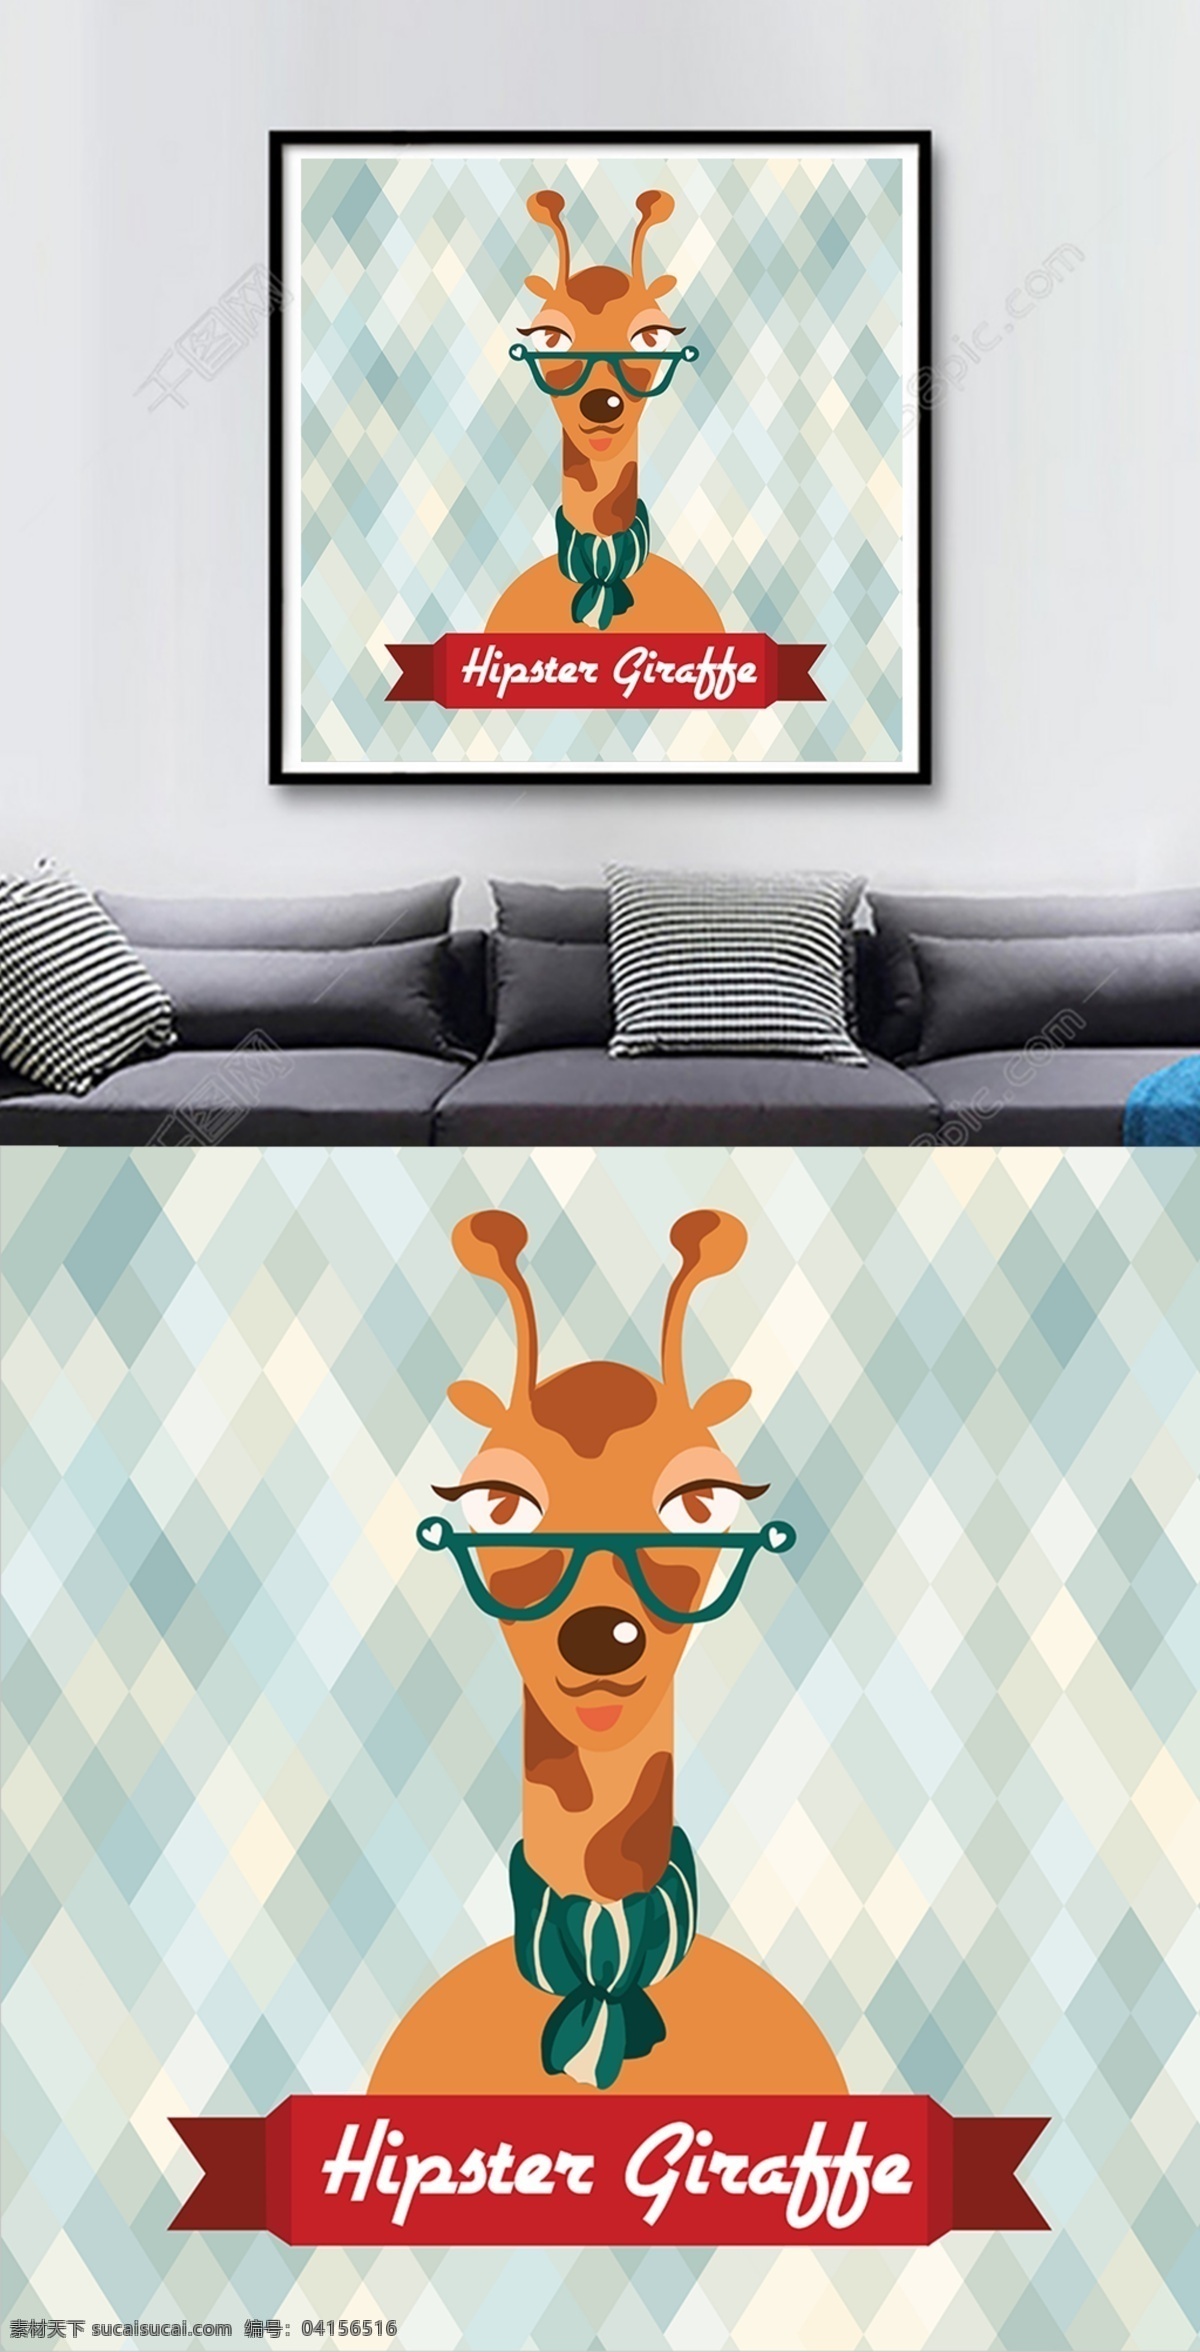 方 图 卡通 菱 格 背景 长颈鹿 客厅 装饰画 方图 高清 菱格